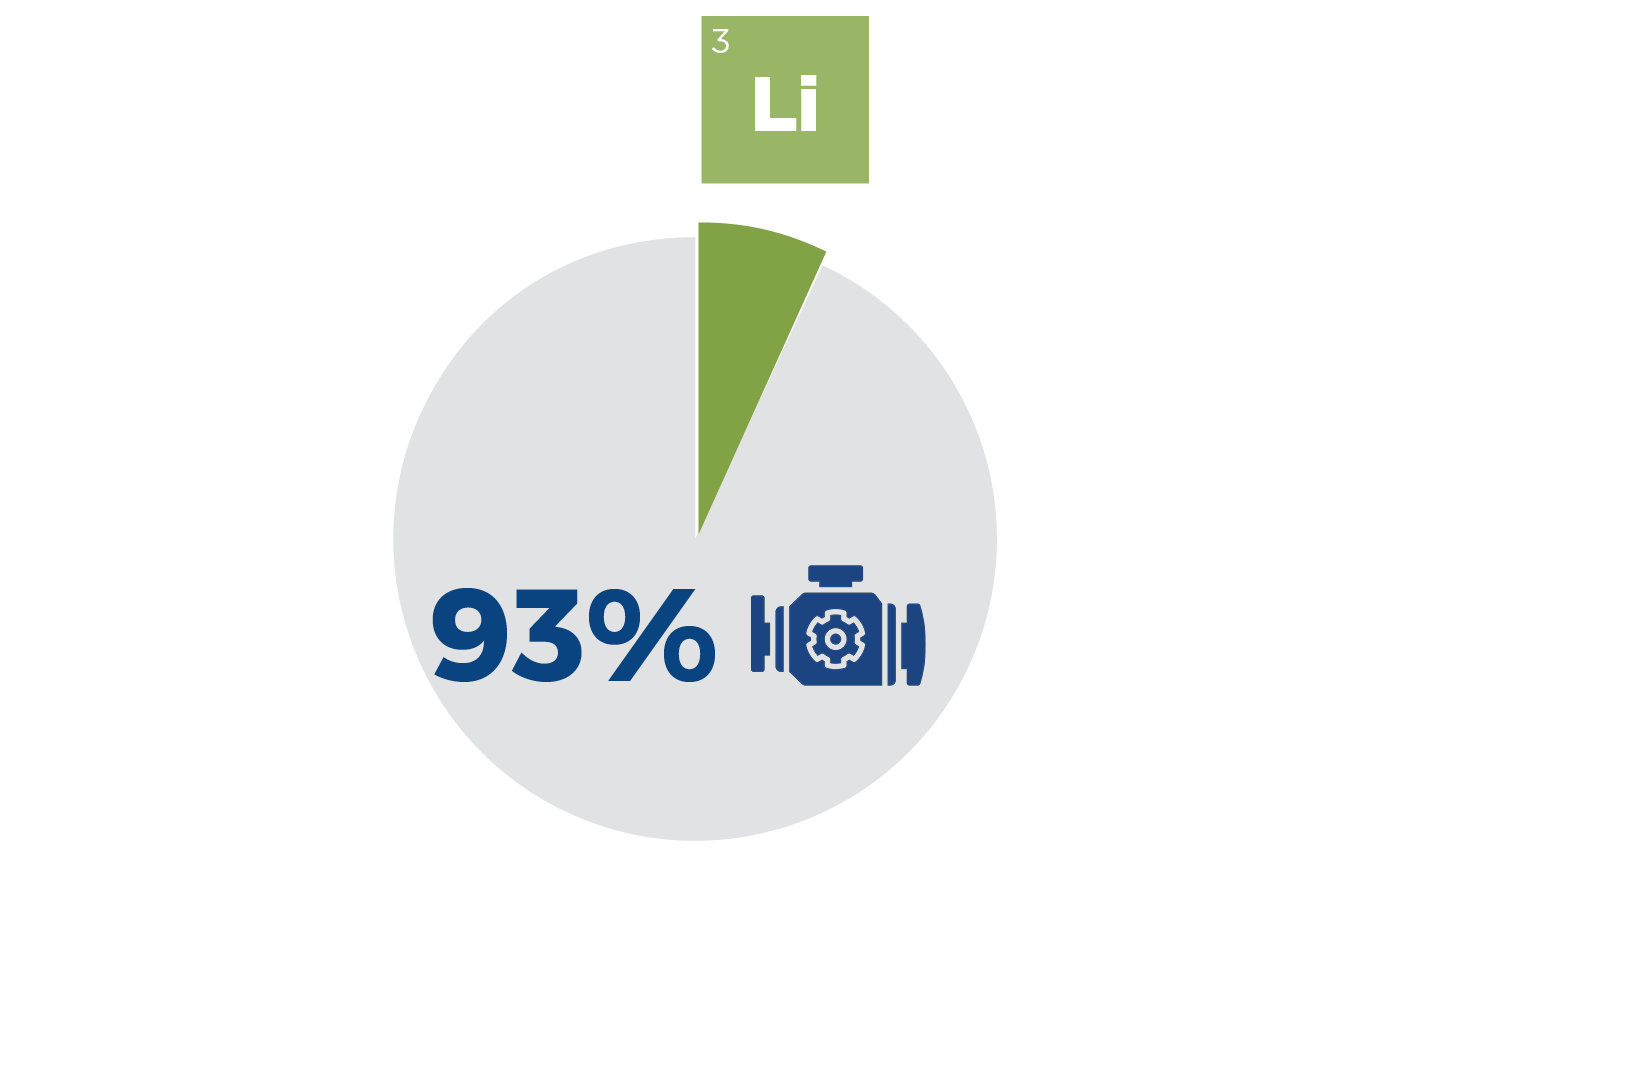 2020 Used Car Sales